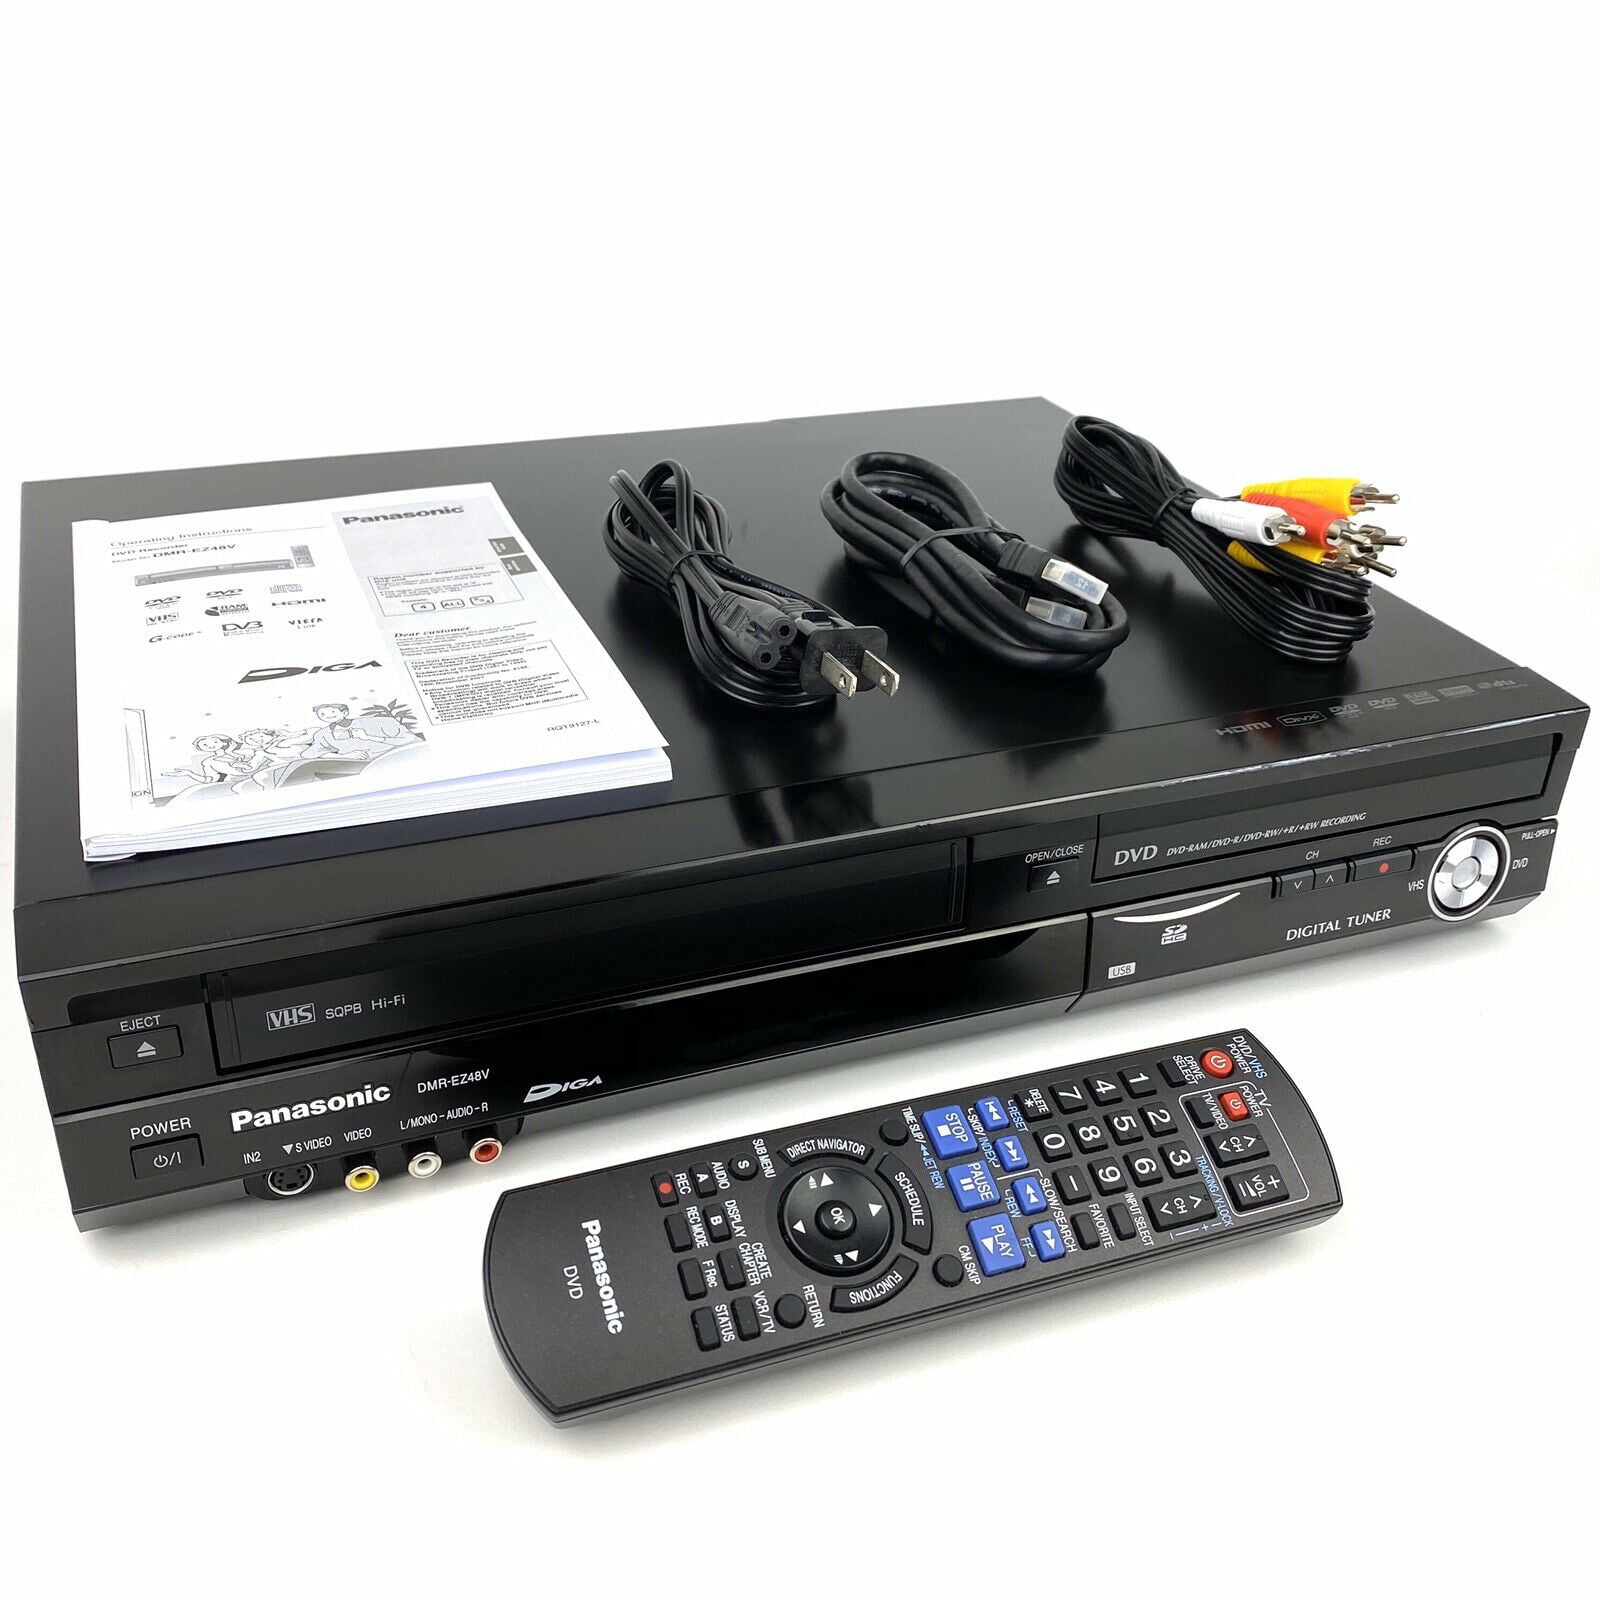 Panasonic DMR-EZ48V DVD VCR Combo Player VHS to DVD Recording HDMI